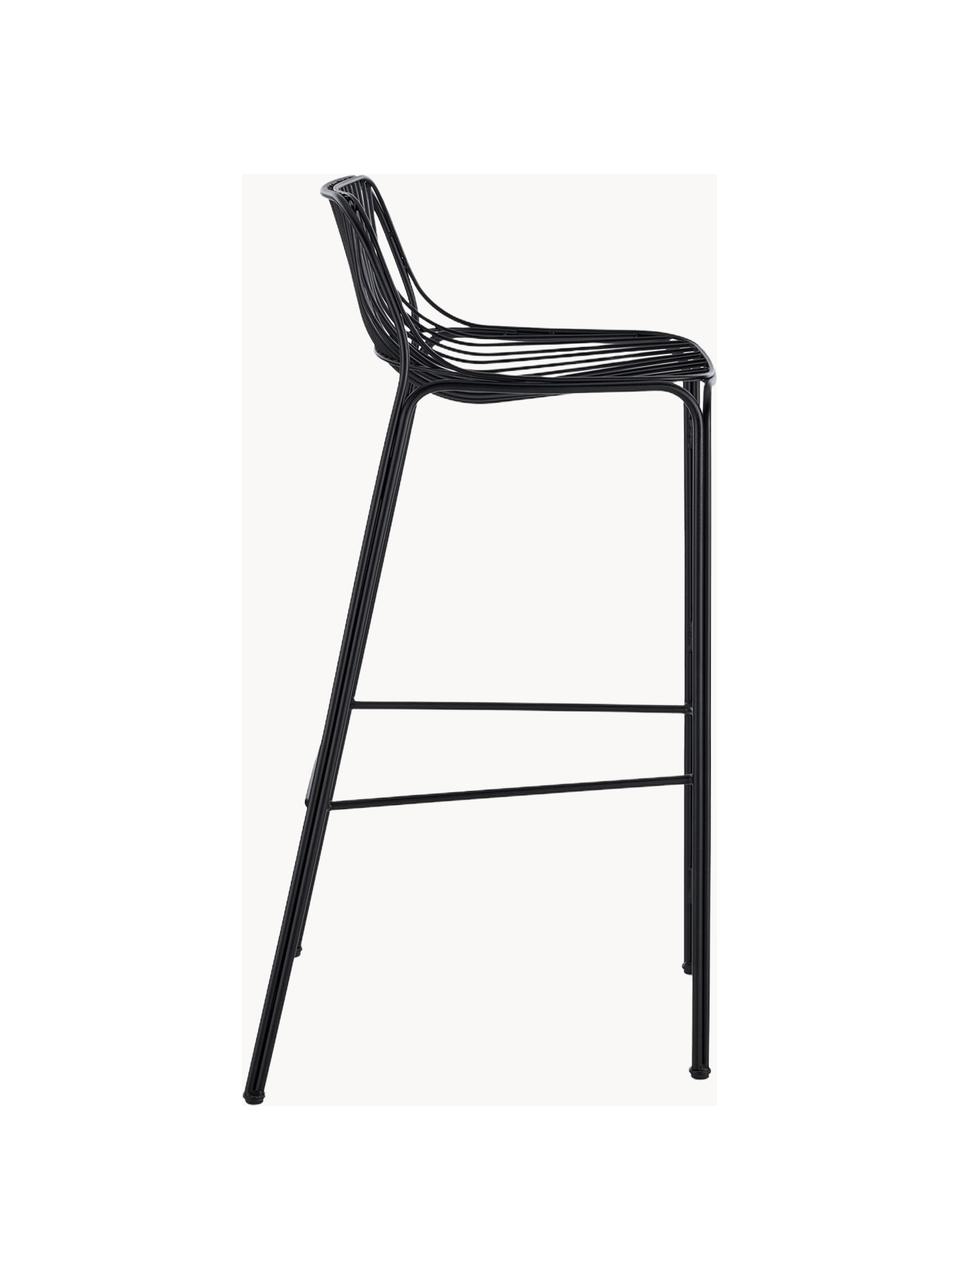 Ogrodowe krzesło barowe Hiray, Stal ocynkowana, lakierowana, Czarny, S 57 x W 96 cm